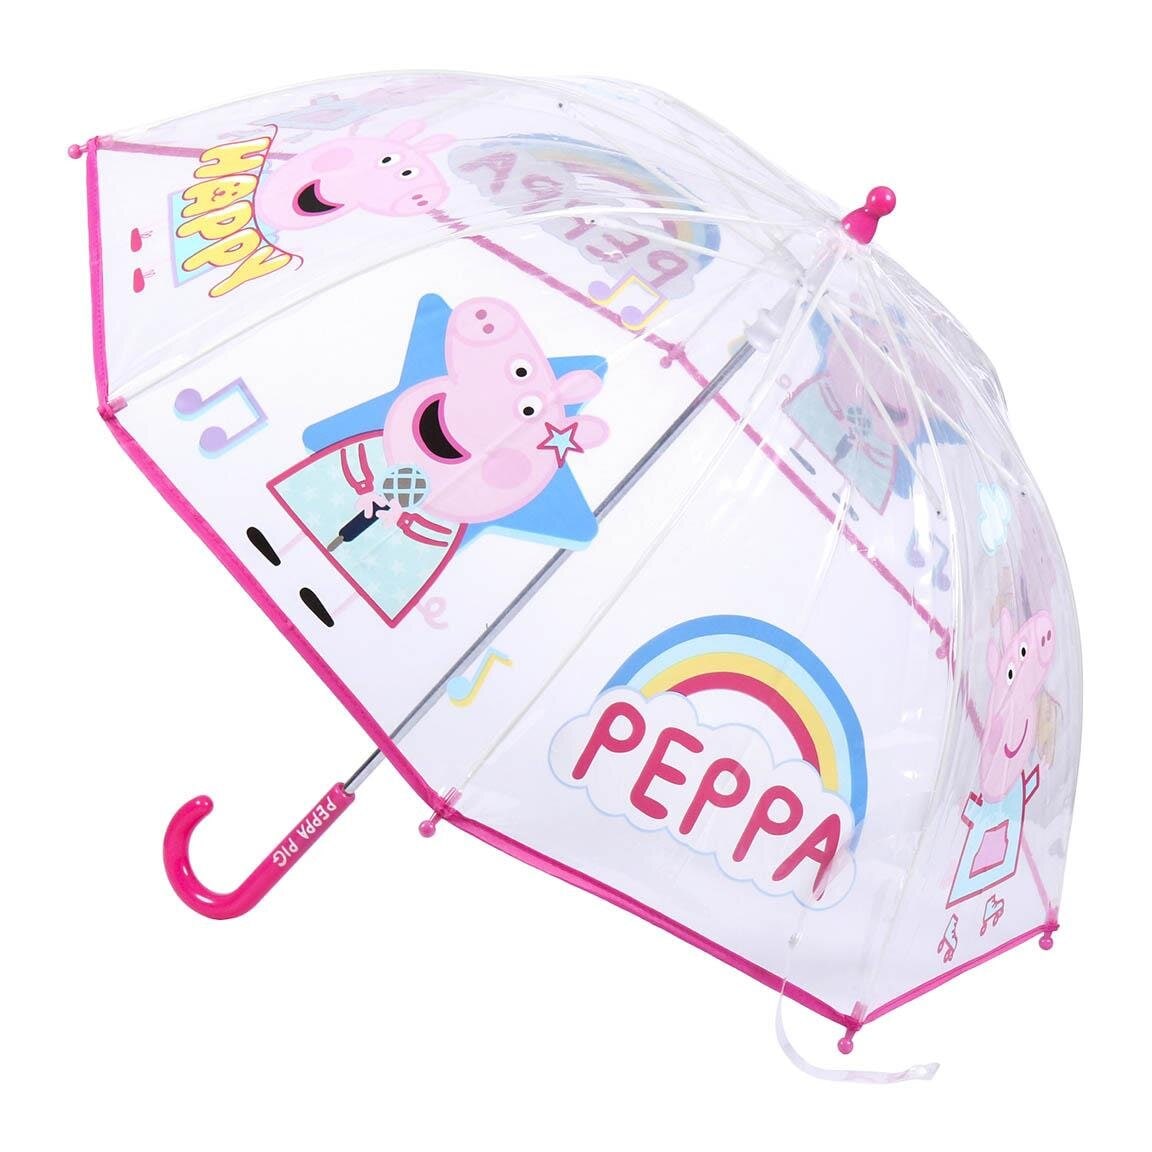 Peppa Pig - Barnparaply